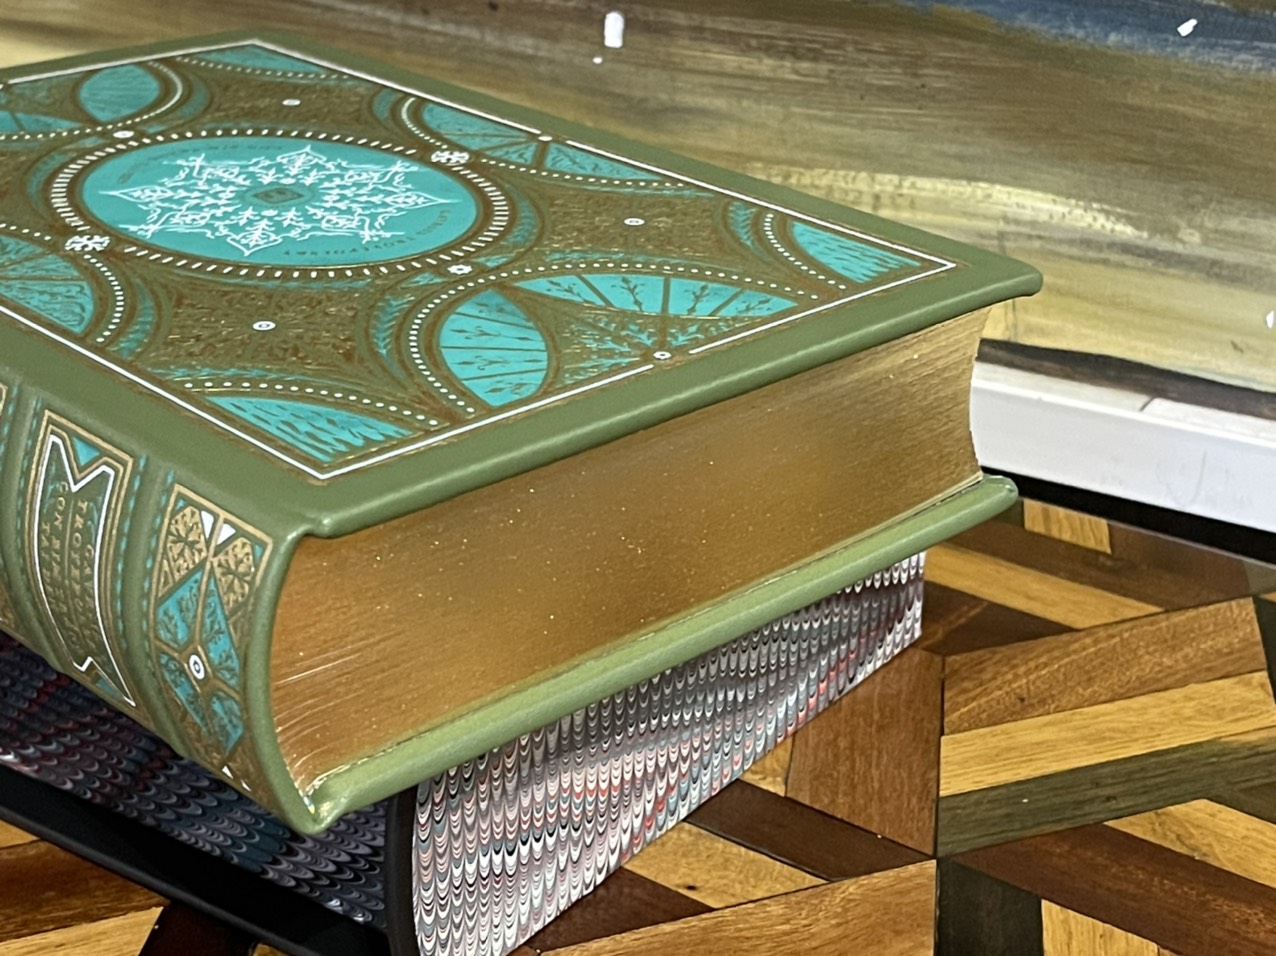 (Ấn bản giới hạn 500 cuốn) (bìa da microfiber) CON BIM TRẮNG TAI ĐEN – Gavriil Troyepolsky – minh họa mới của họa sĩ Đức Lâm – Đông A